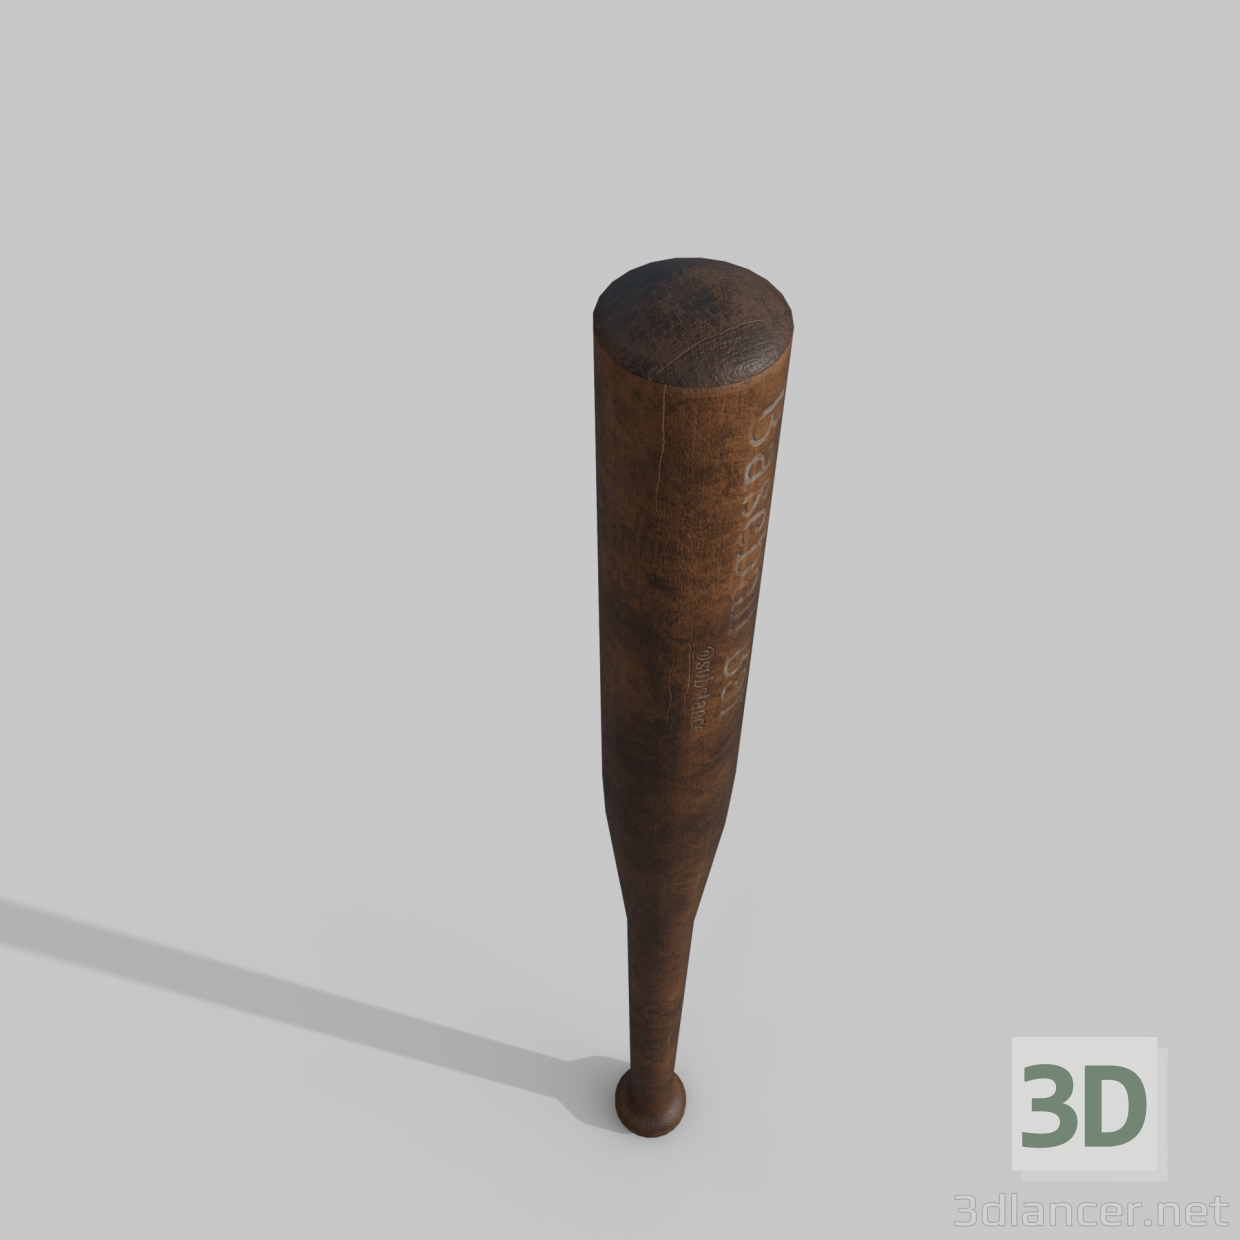 Bate de beisbol 3D modelo Compro - render